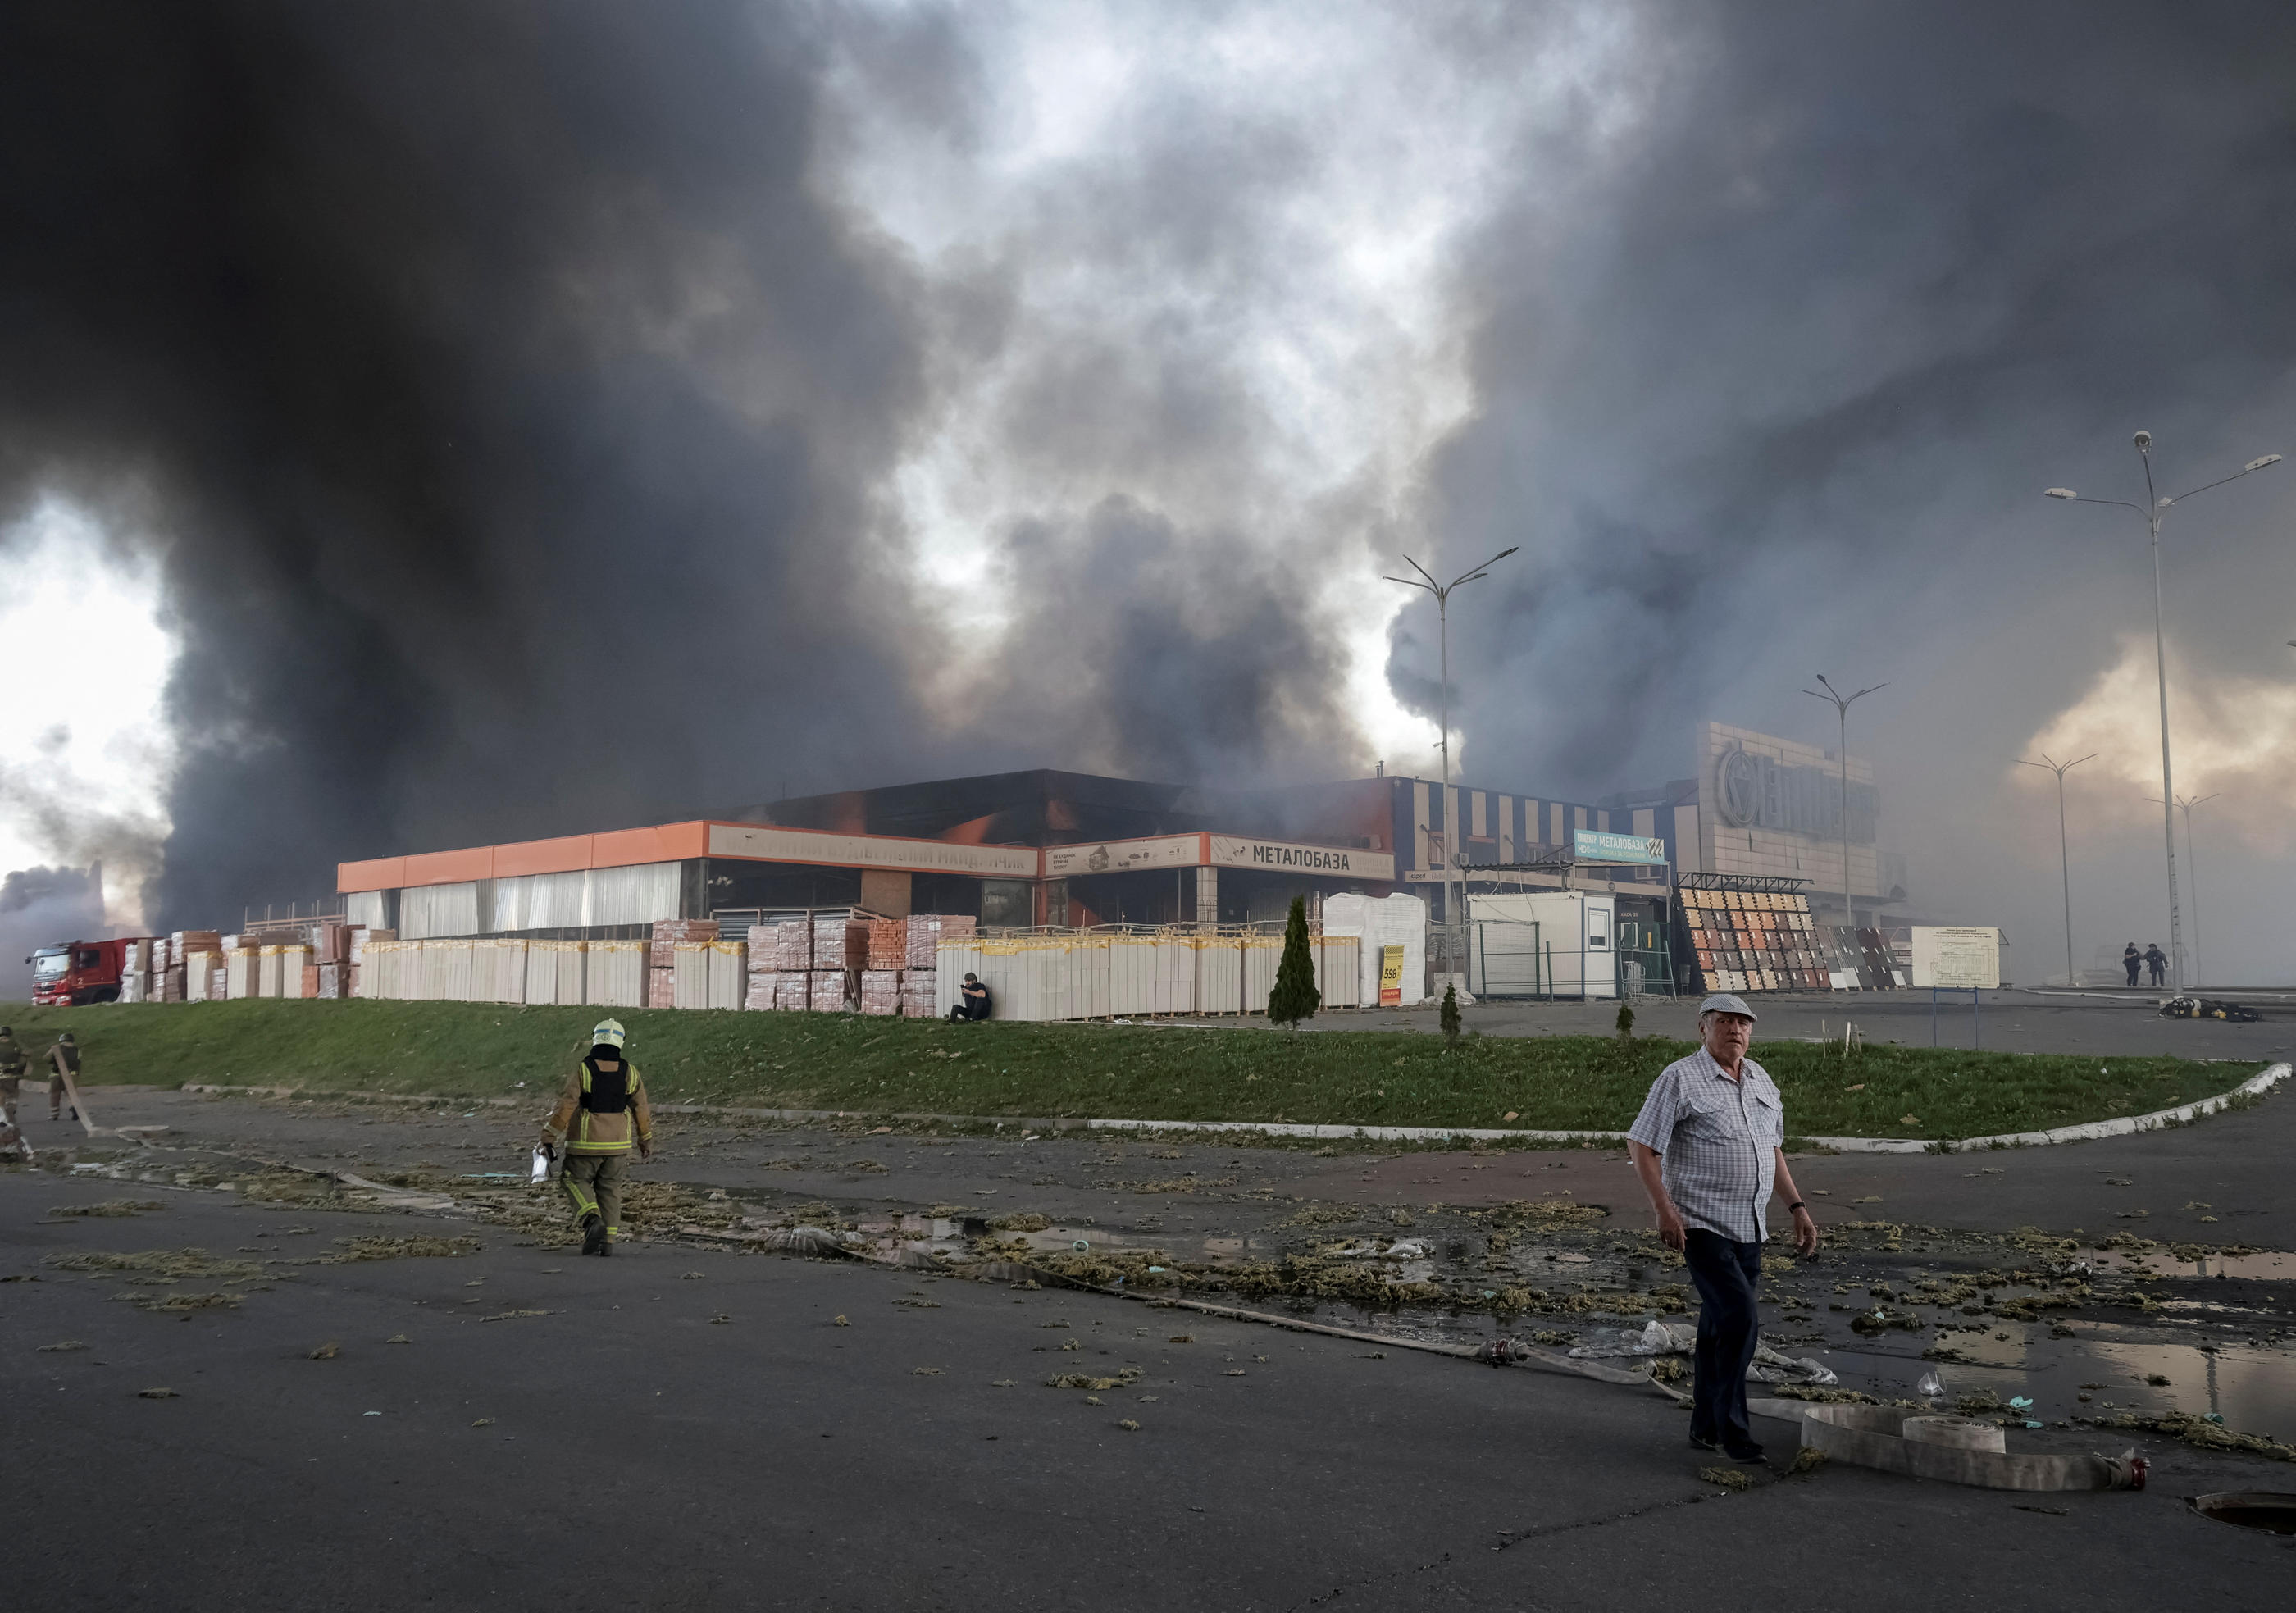 Des images diffusées sur les réseaux sociaux ukrainiens montraient le bâtiment dont s’échappe une énorme colonne de fumée noire. Selon les autorités, entre 10 000 et 15 000 m2 sont en feu. Reuters/Sofiia Gatilova